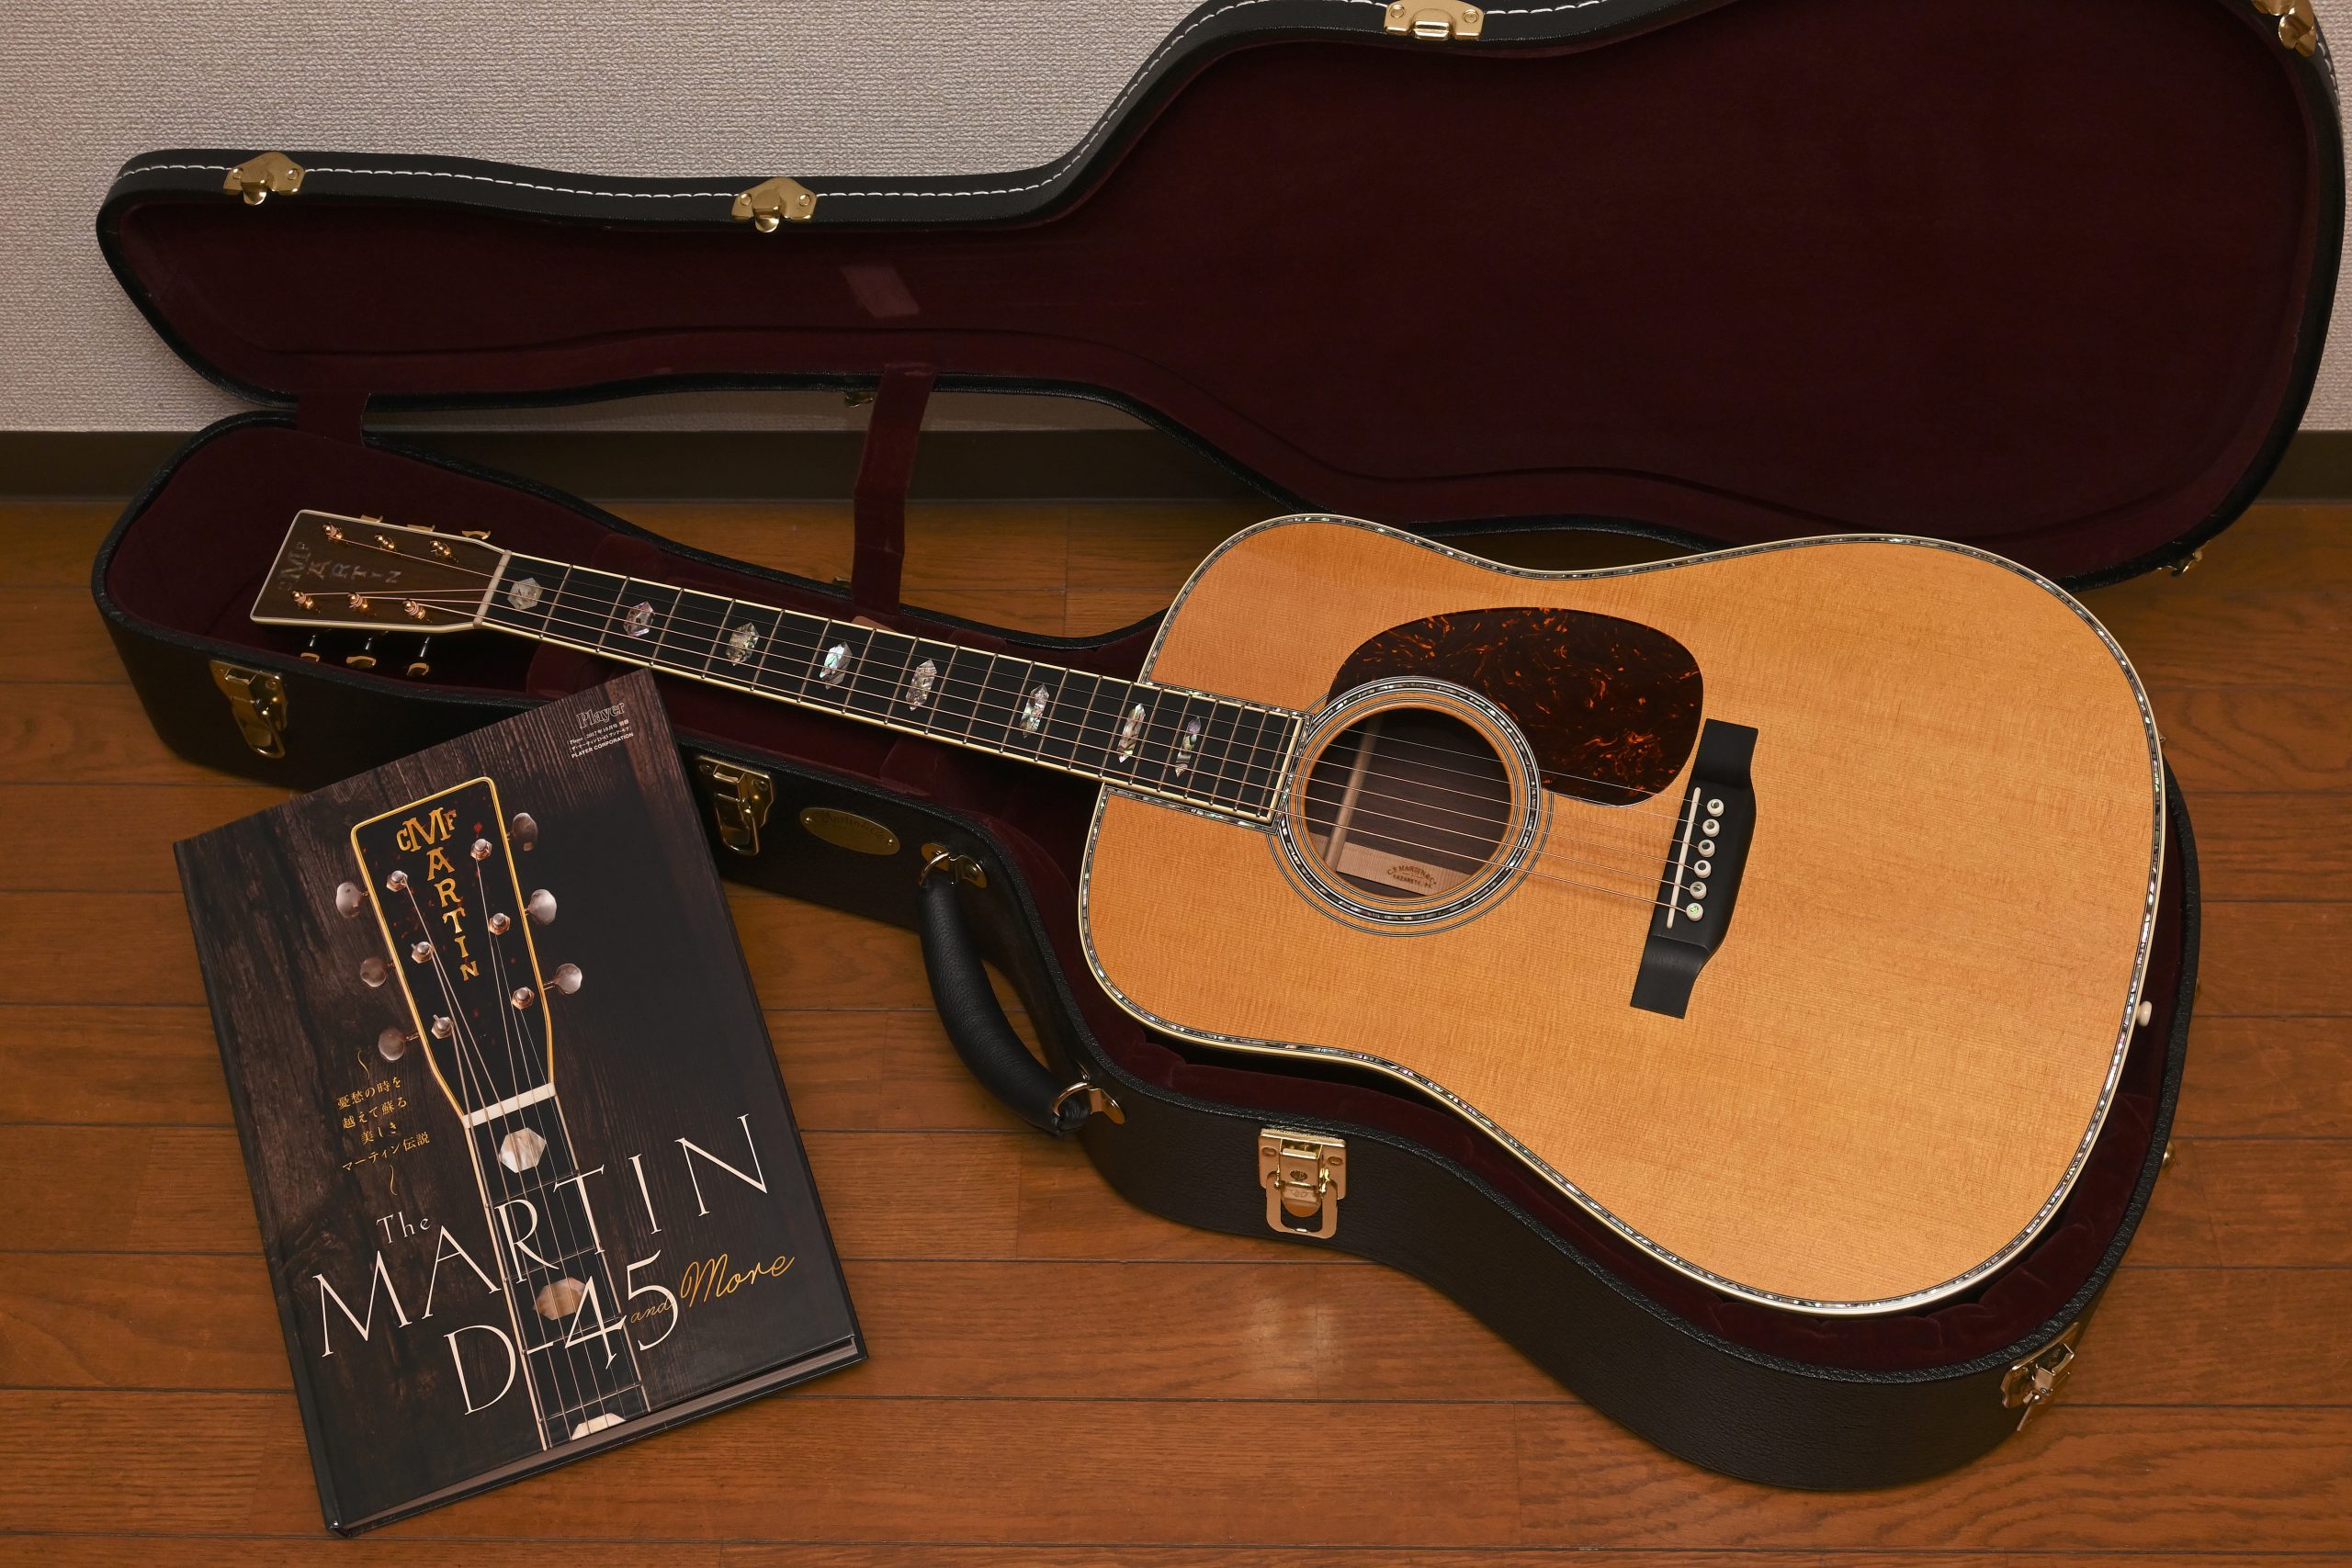 【通販限定品】MARTIN D-45 and More マーティン ギター Martin 趣味・スポーツ・実用